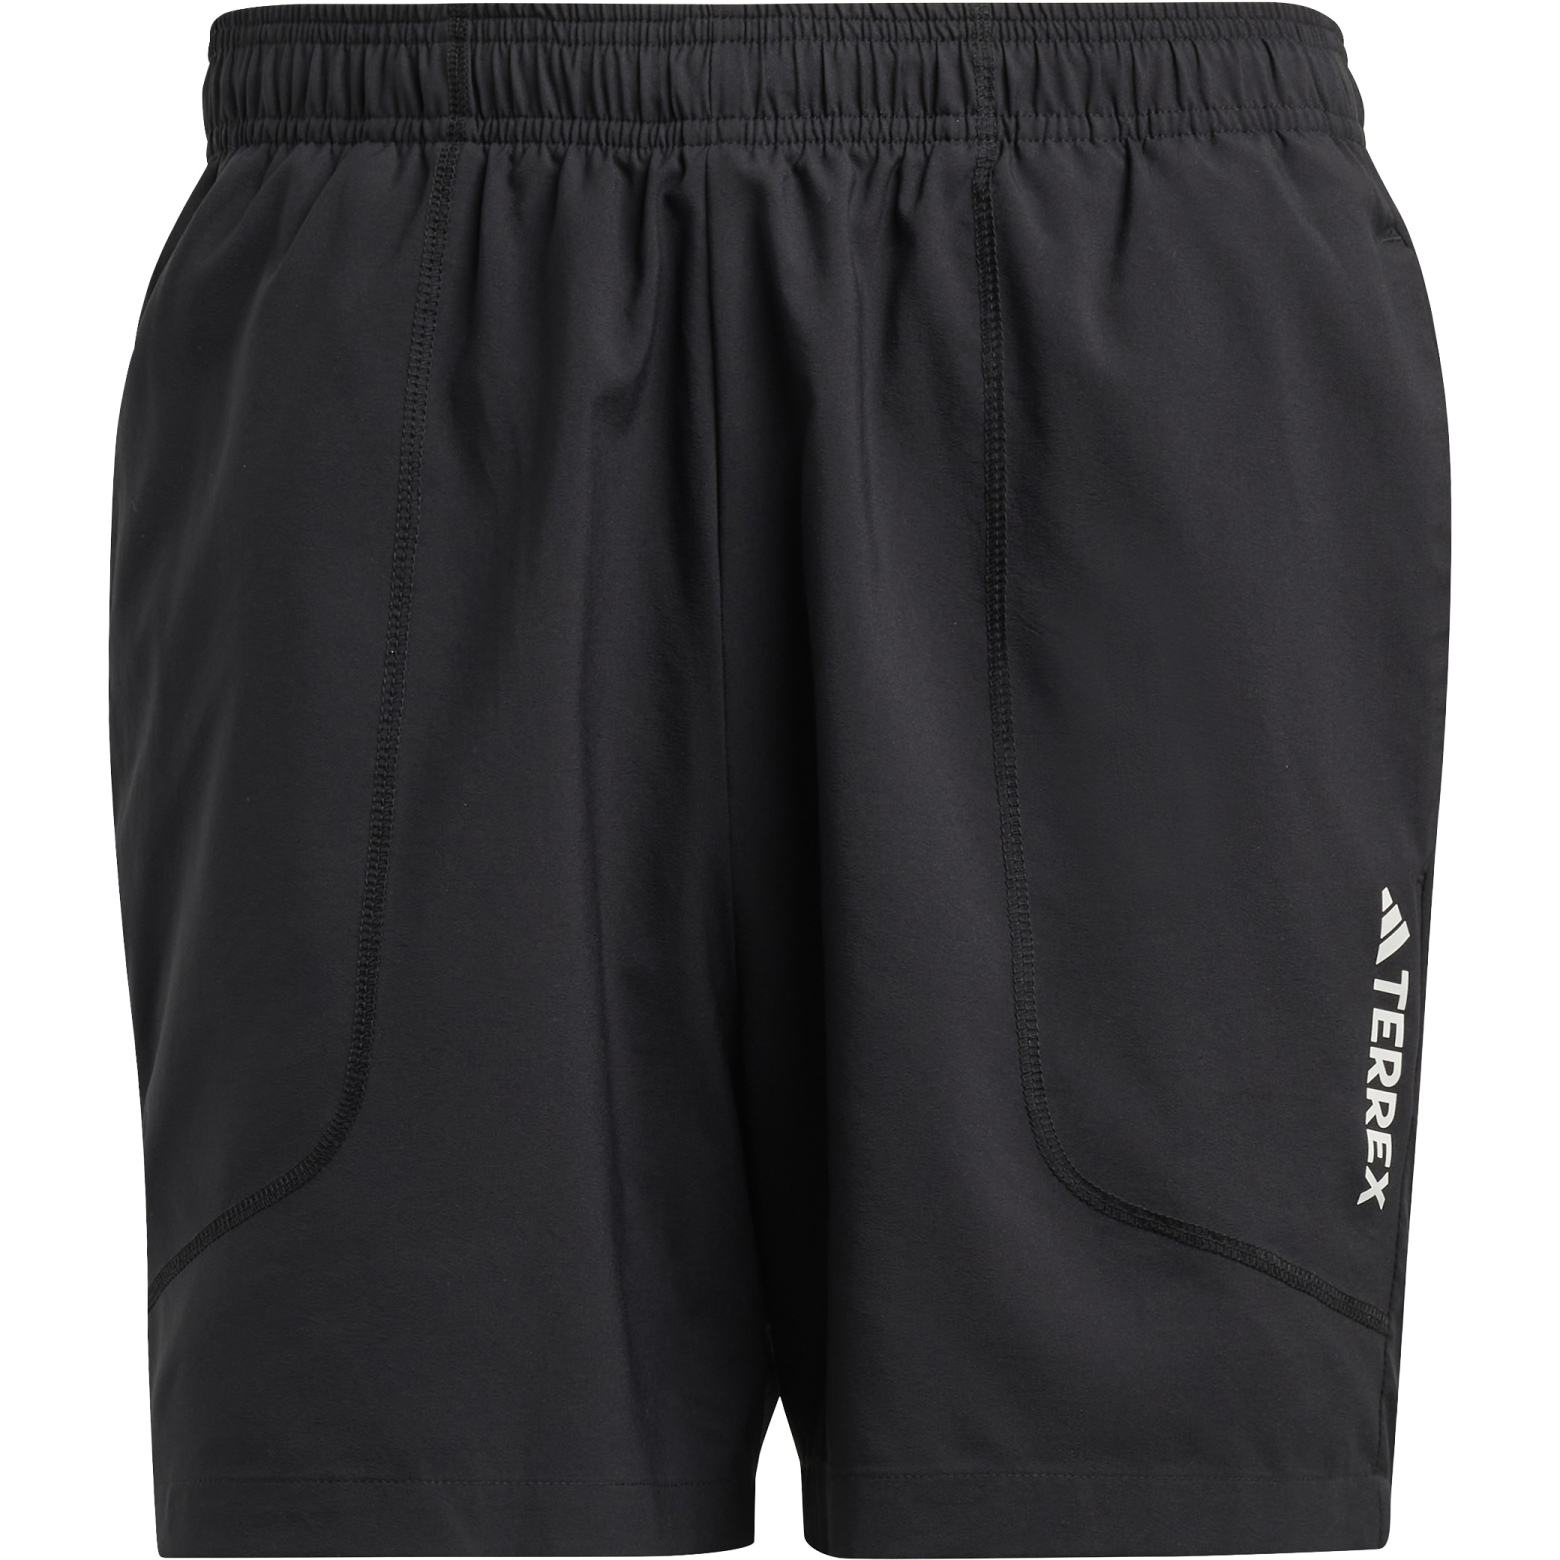 Produktbild von adidas TERREX Multi Shorts Herren - schwarz HM4013